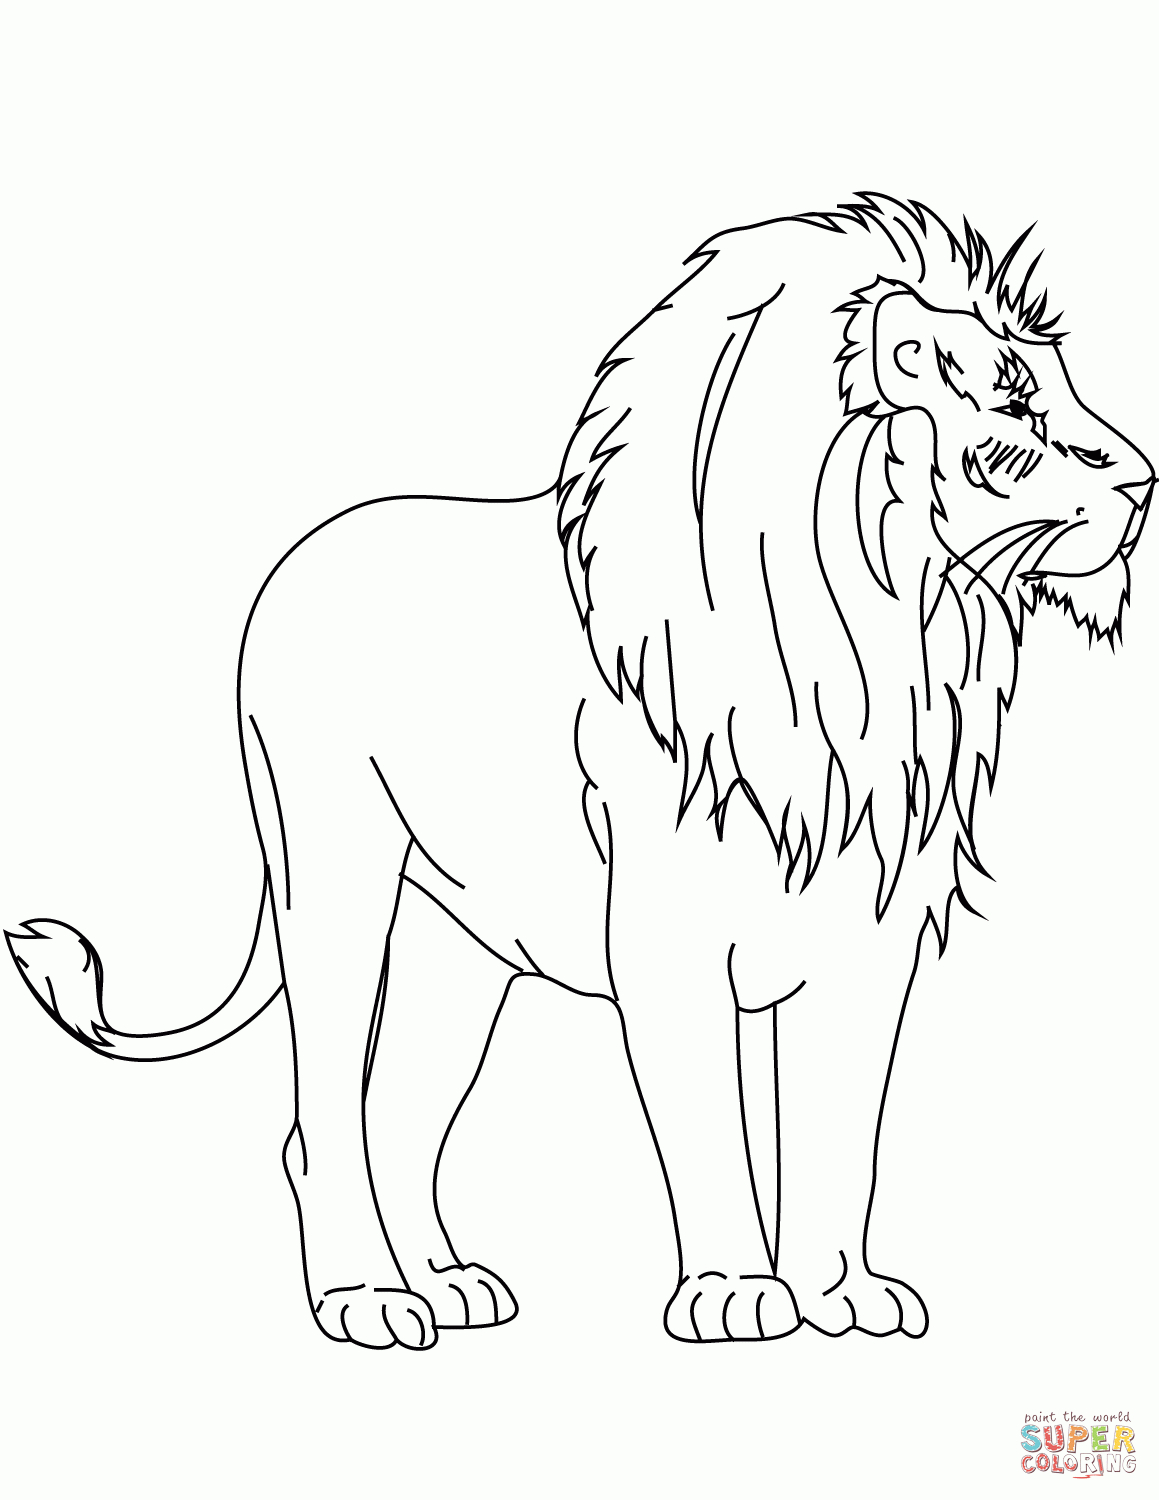 Ausmalbilder Löwen - Malvorlagen Kostenlos Zum Ausdrucken bei Ausmalbild Löwe